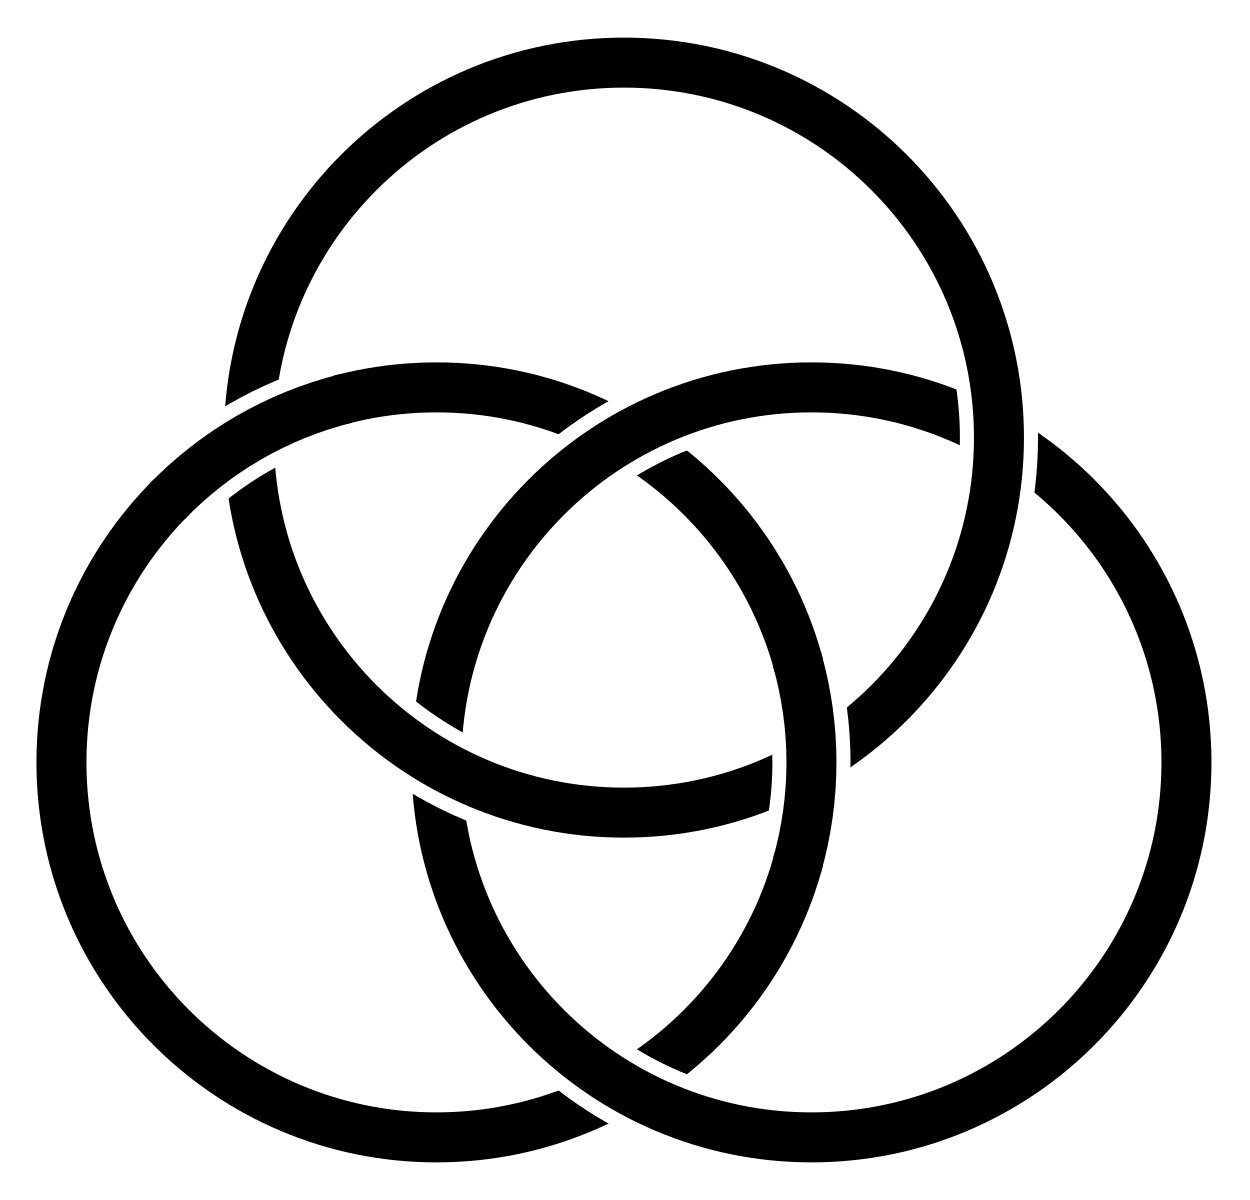 Кольца Борромео Лакан. Кольца Борромео символ. Кельтский символ Трикветра. Кольца Борромео из 4 колец. Круг скопировать символ